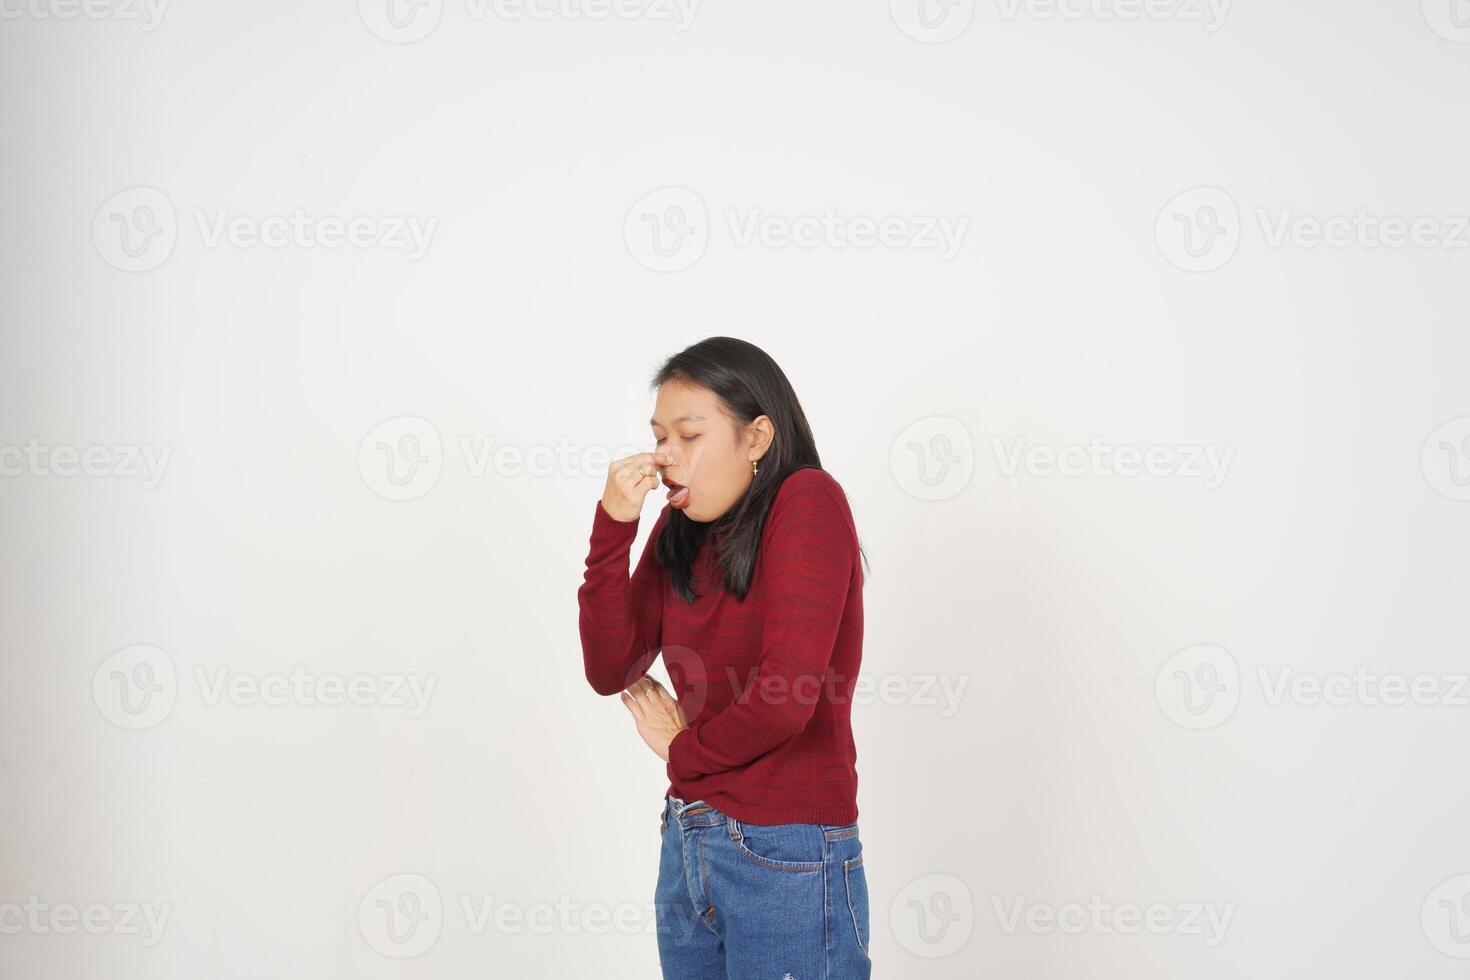 ung asiatisk kvinna i röd t-shirt lukta något illaluktande och äcklig isolerat på vit bakgrund foto